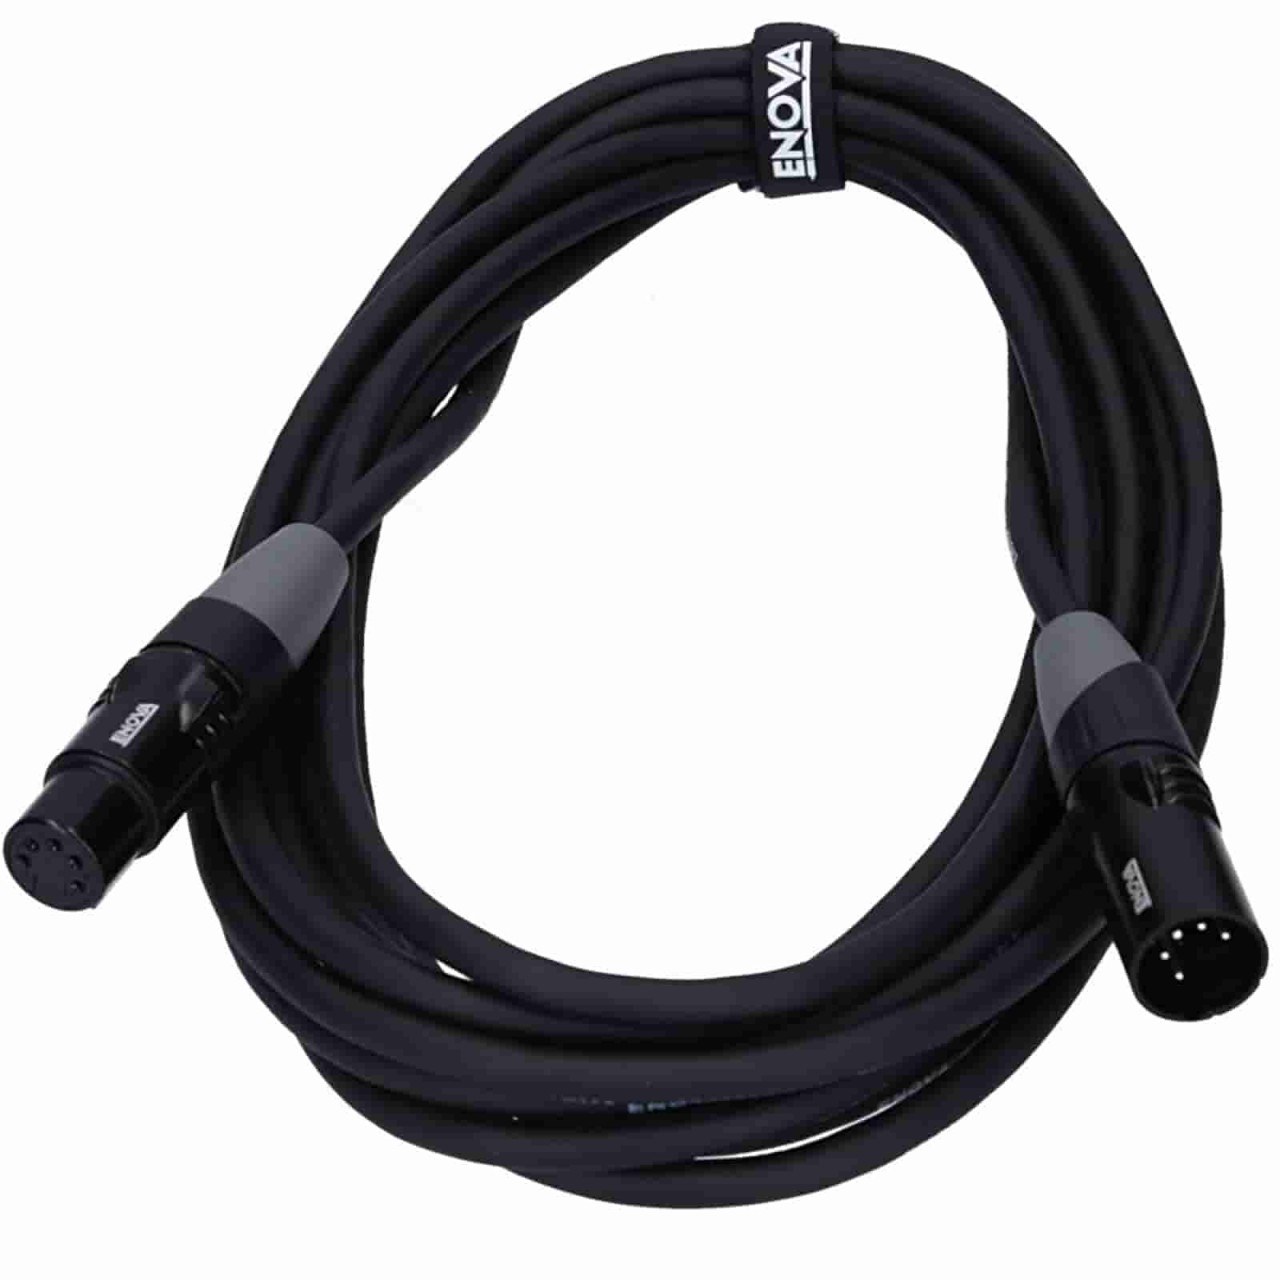 15m DMX/XLR cable